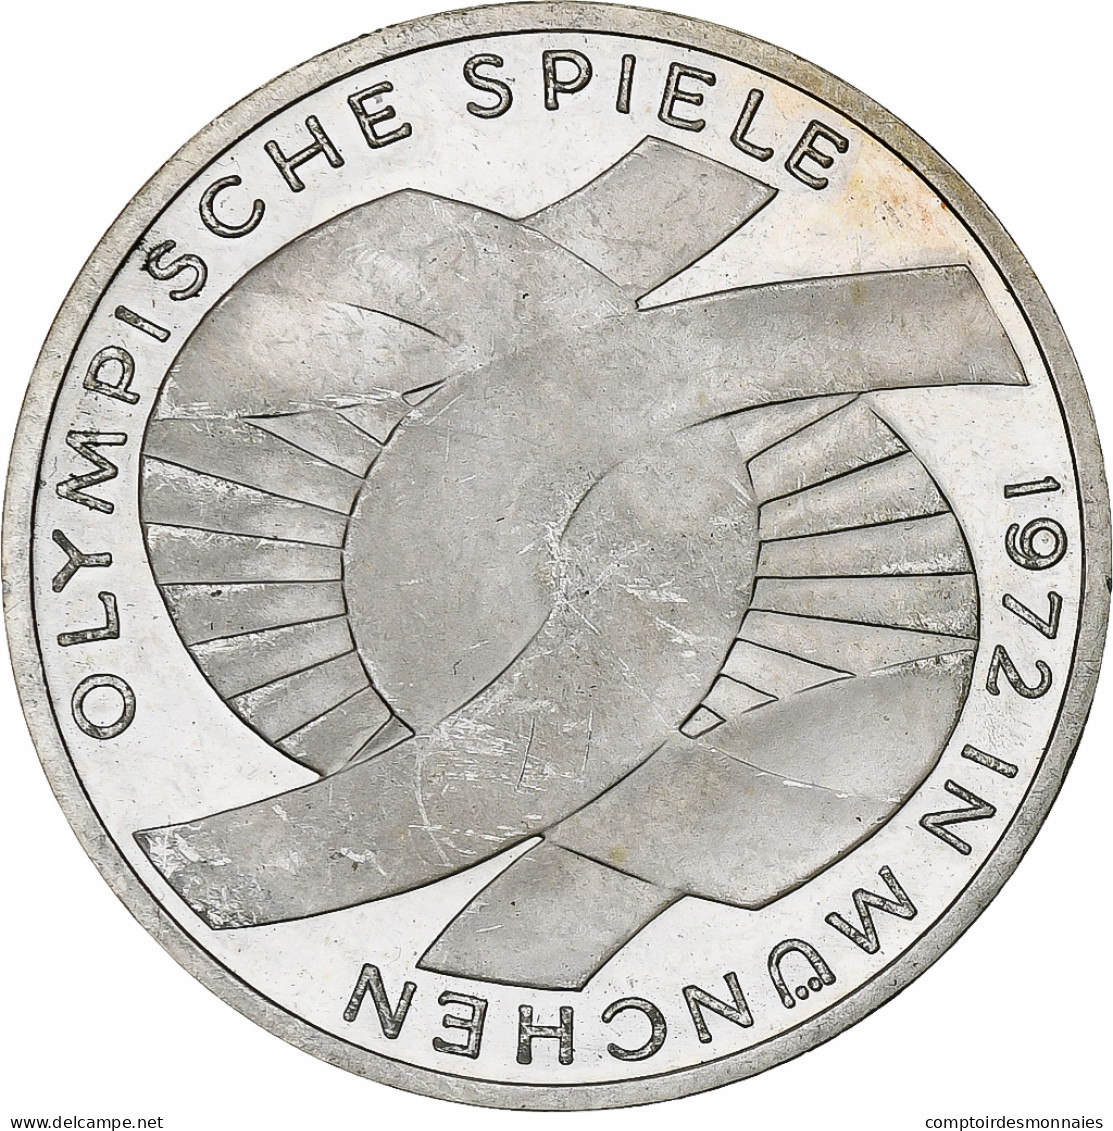 Monnaie, République Fédérale Allemande, 10 Mark, 1972, Karlsruhe, SUP+ - Gedenkmünzen